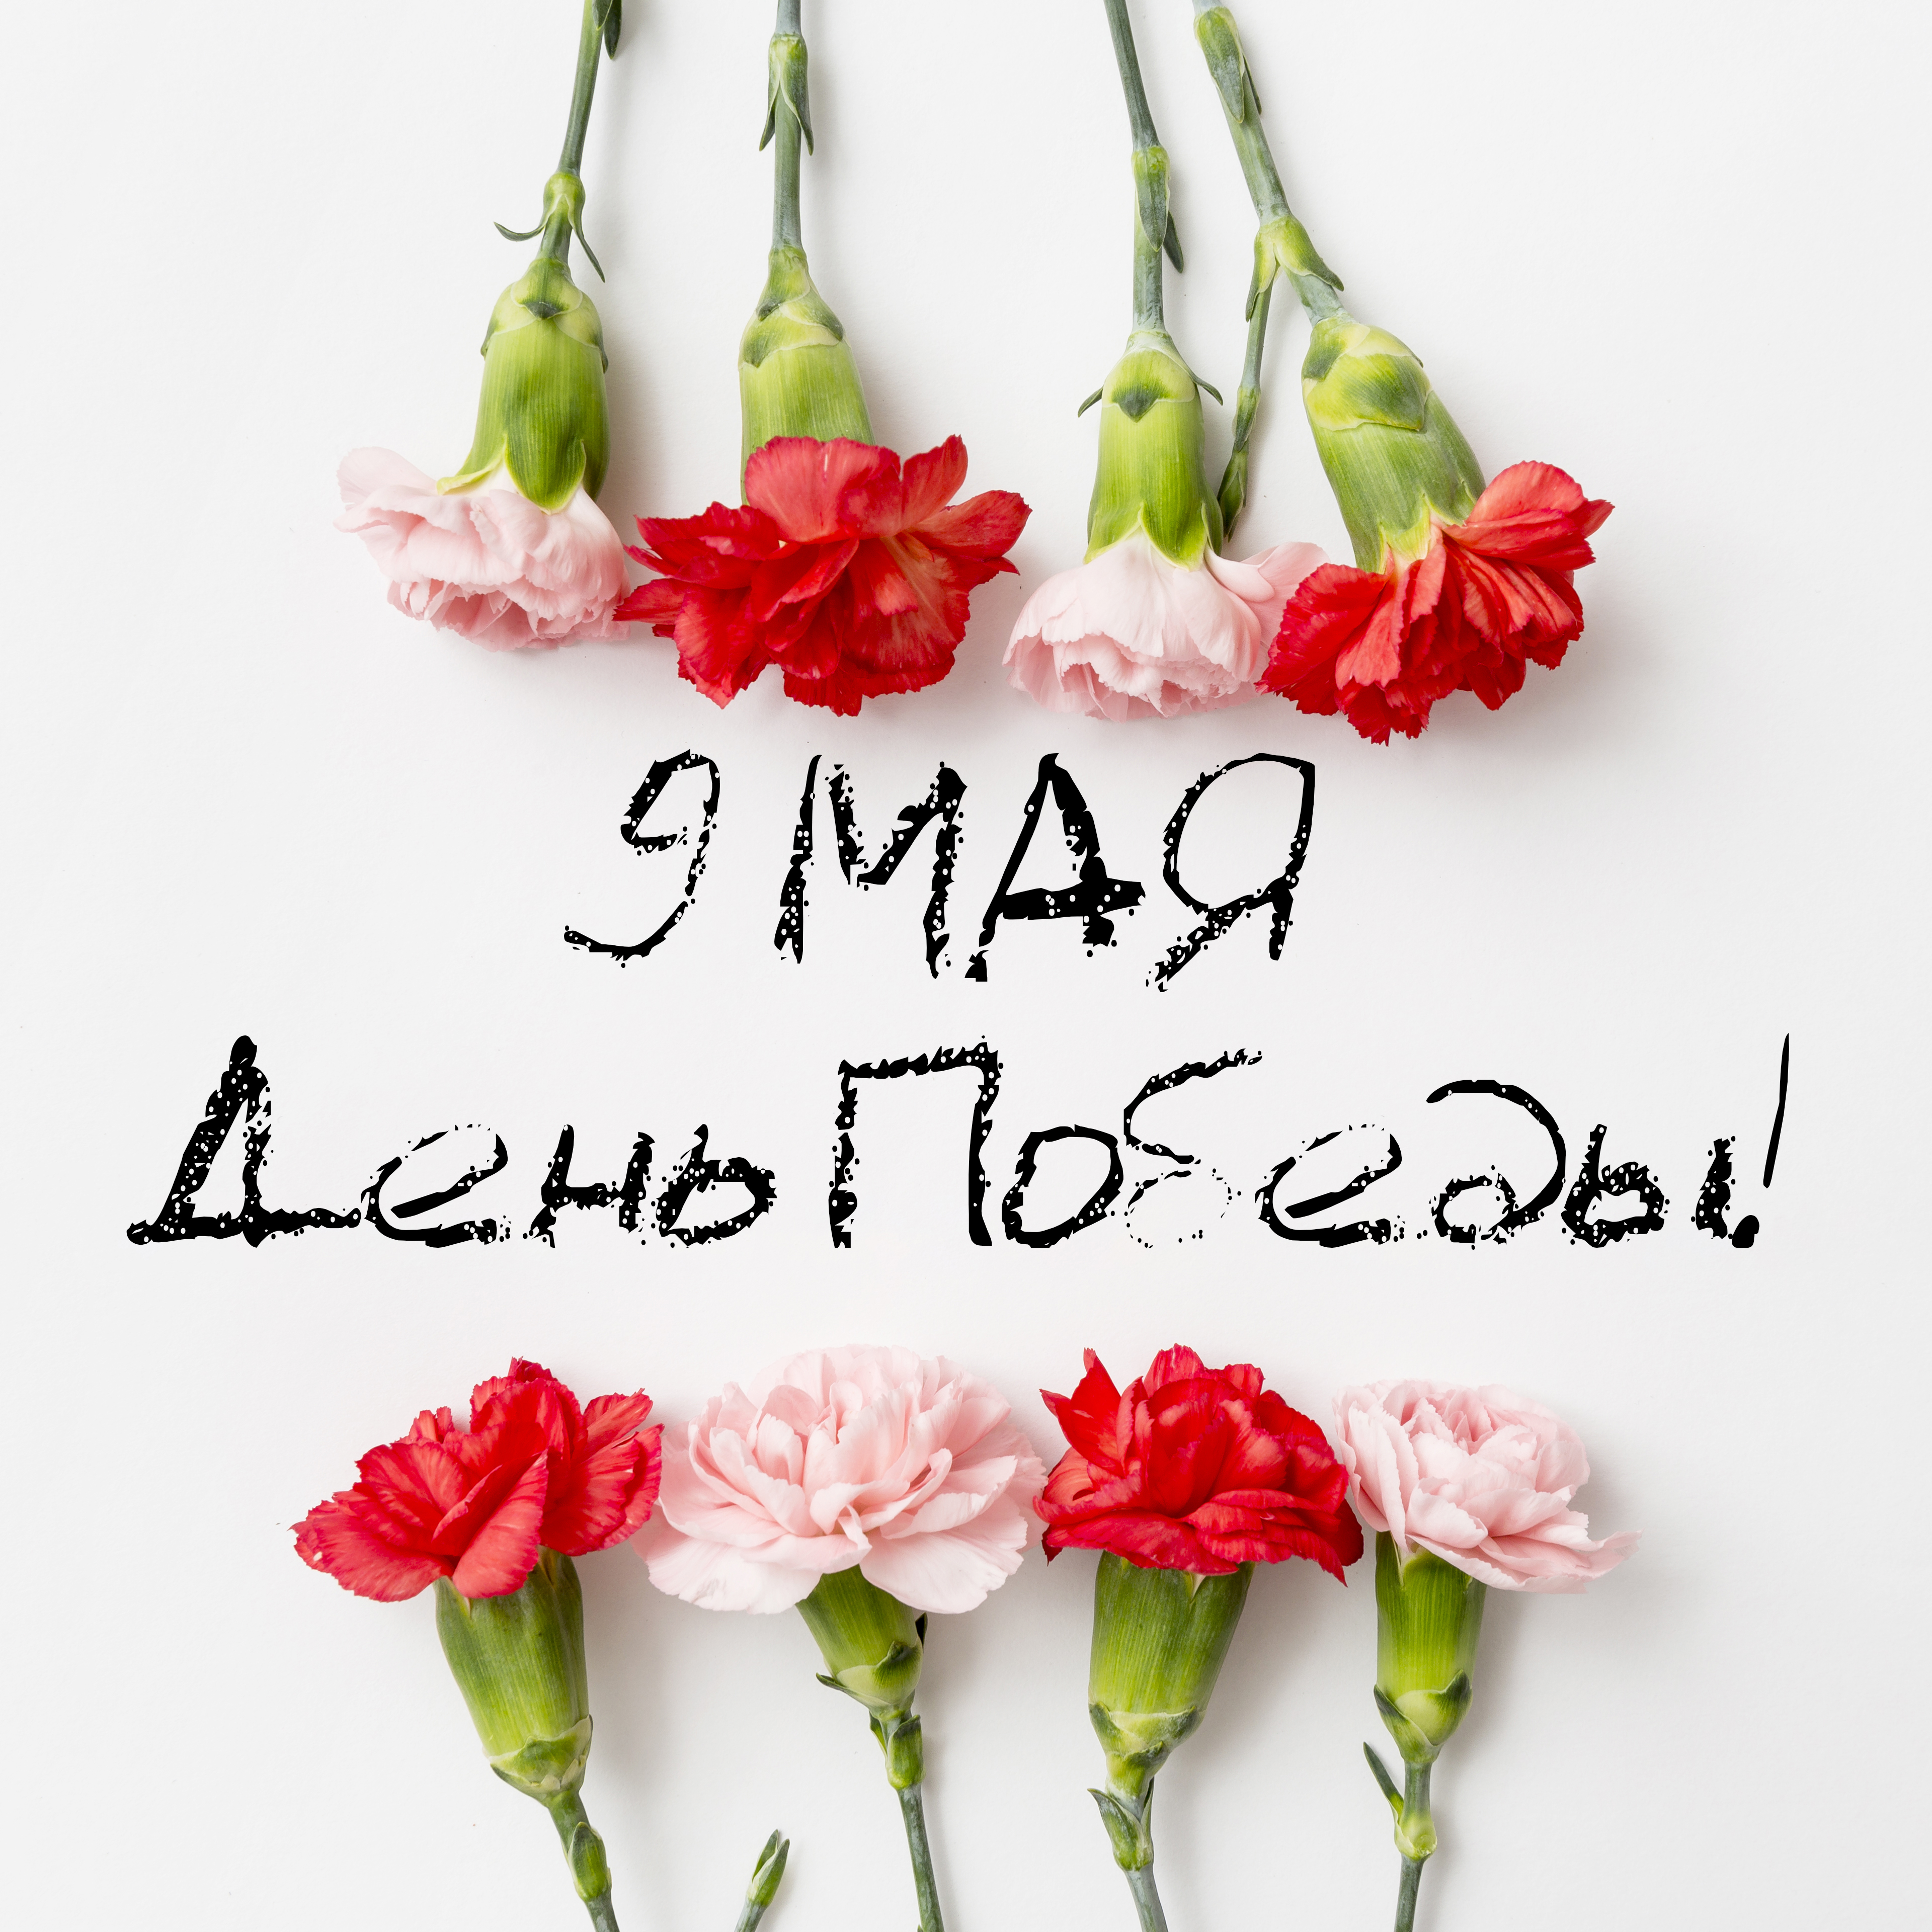 С Великим праздником, Беларусь - с Днём Победы!